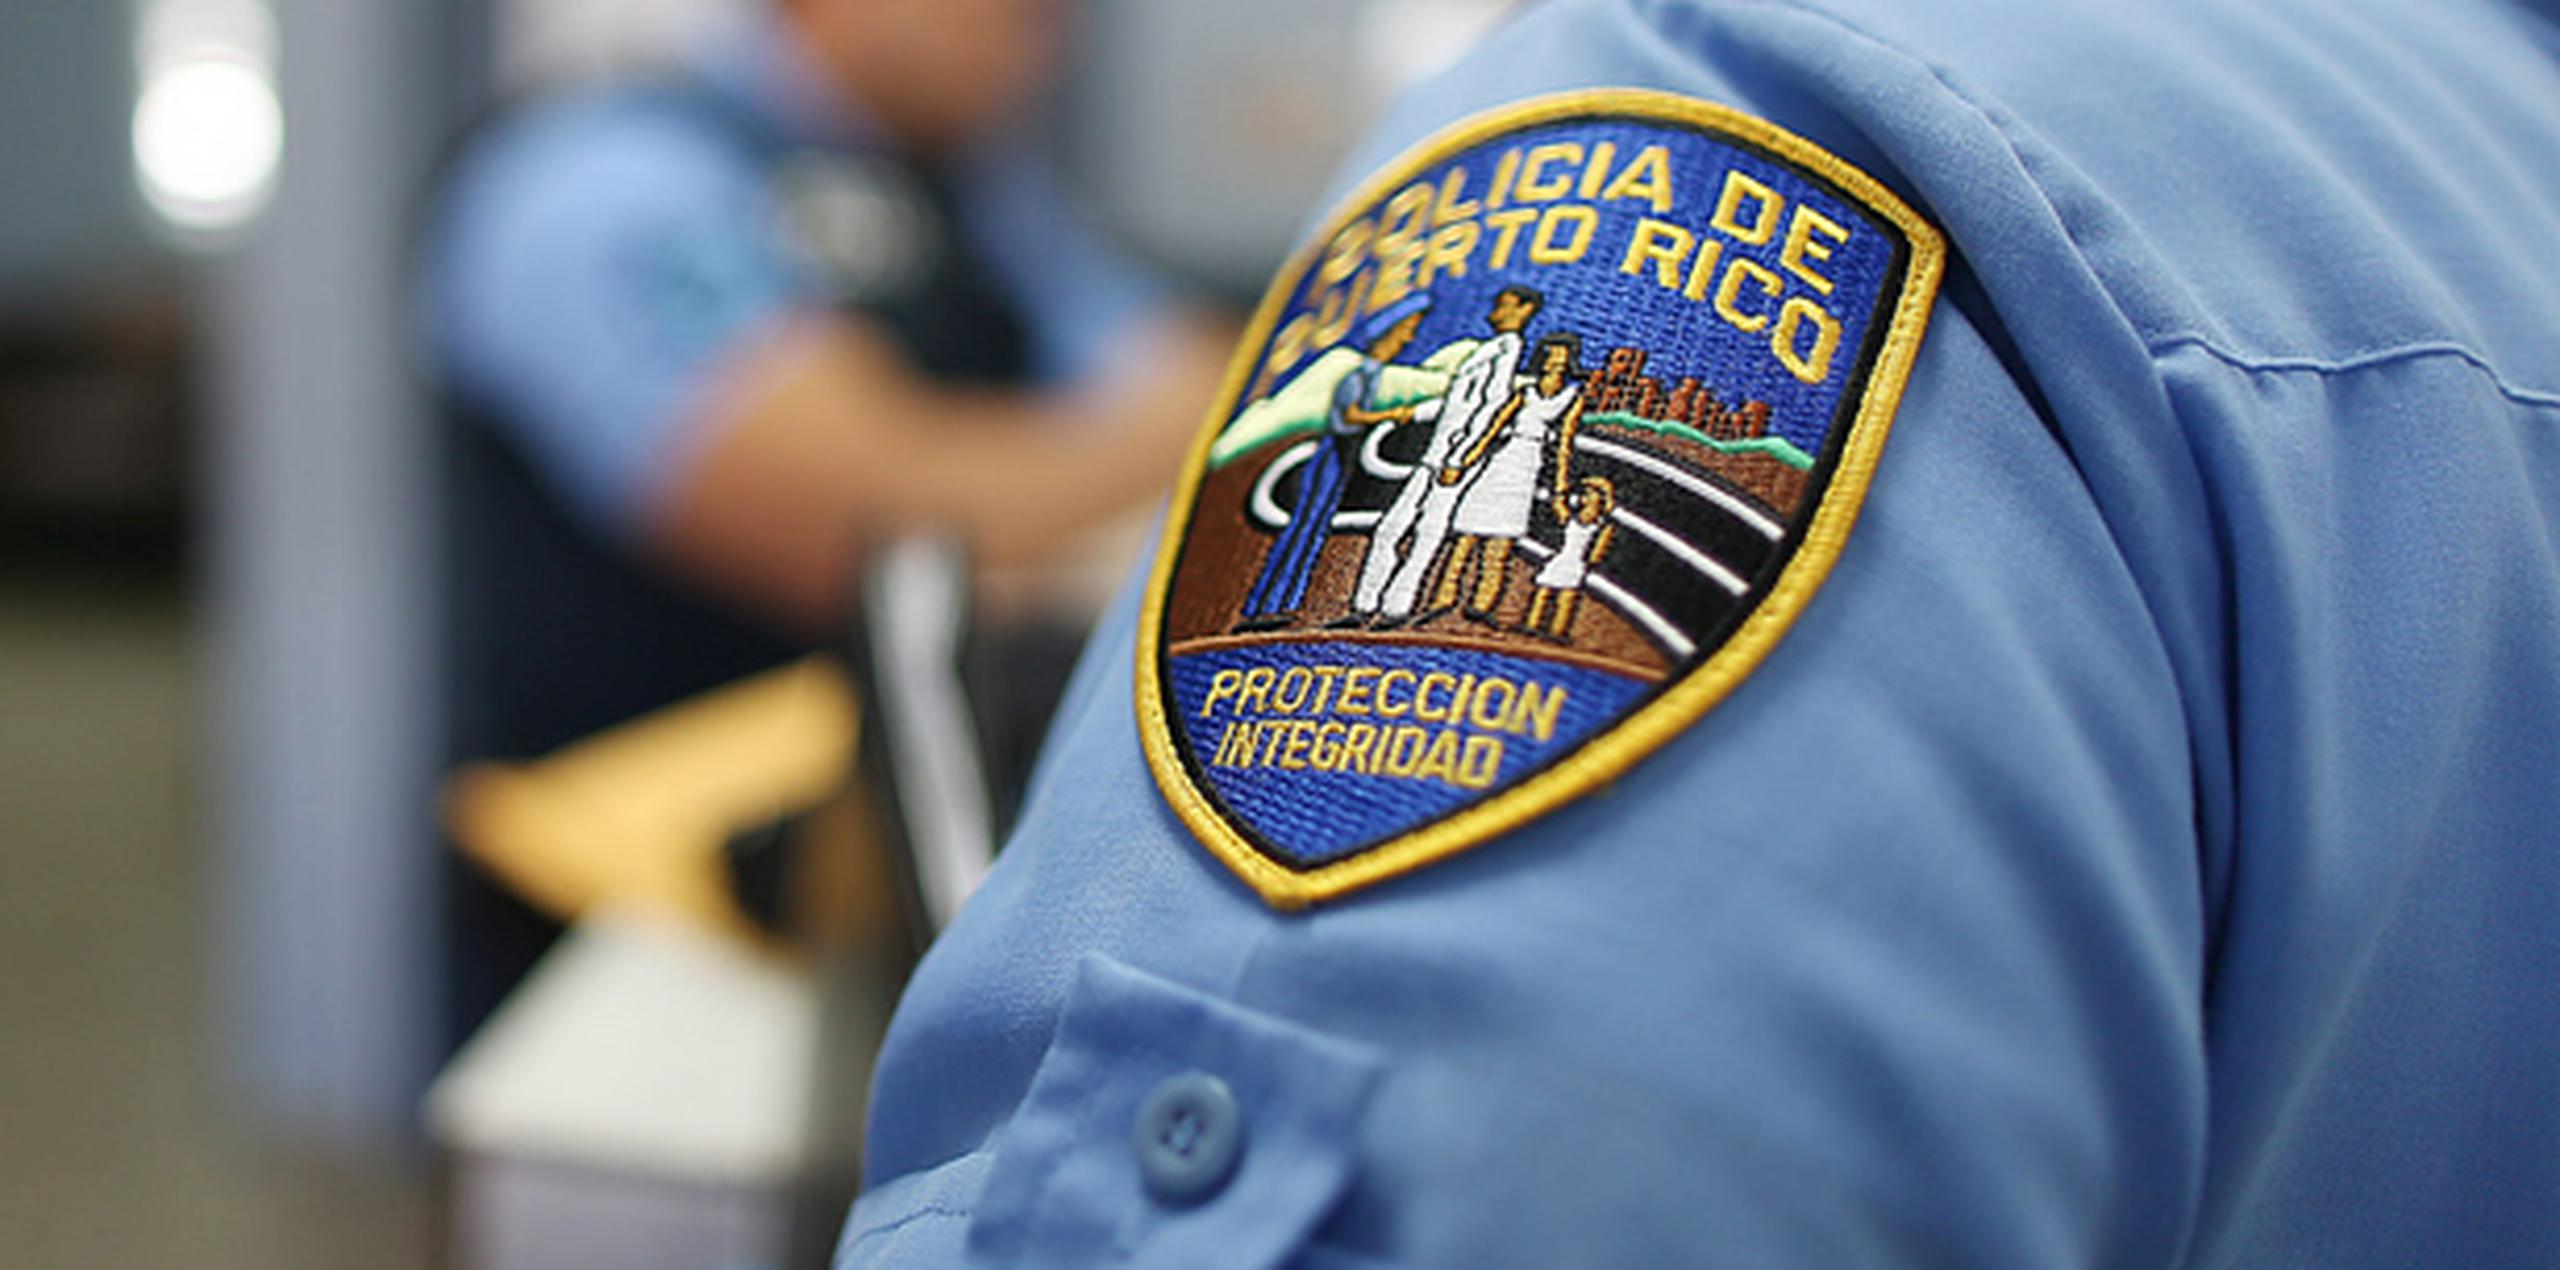 “Se informó que al momento se hace gestiones para localizar el agente”, dijo la Policía en su informe. (Archivo)